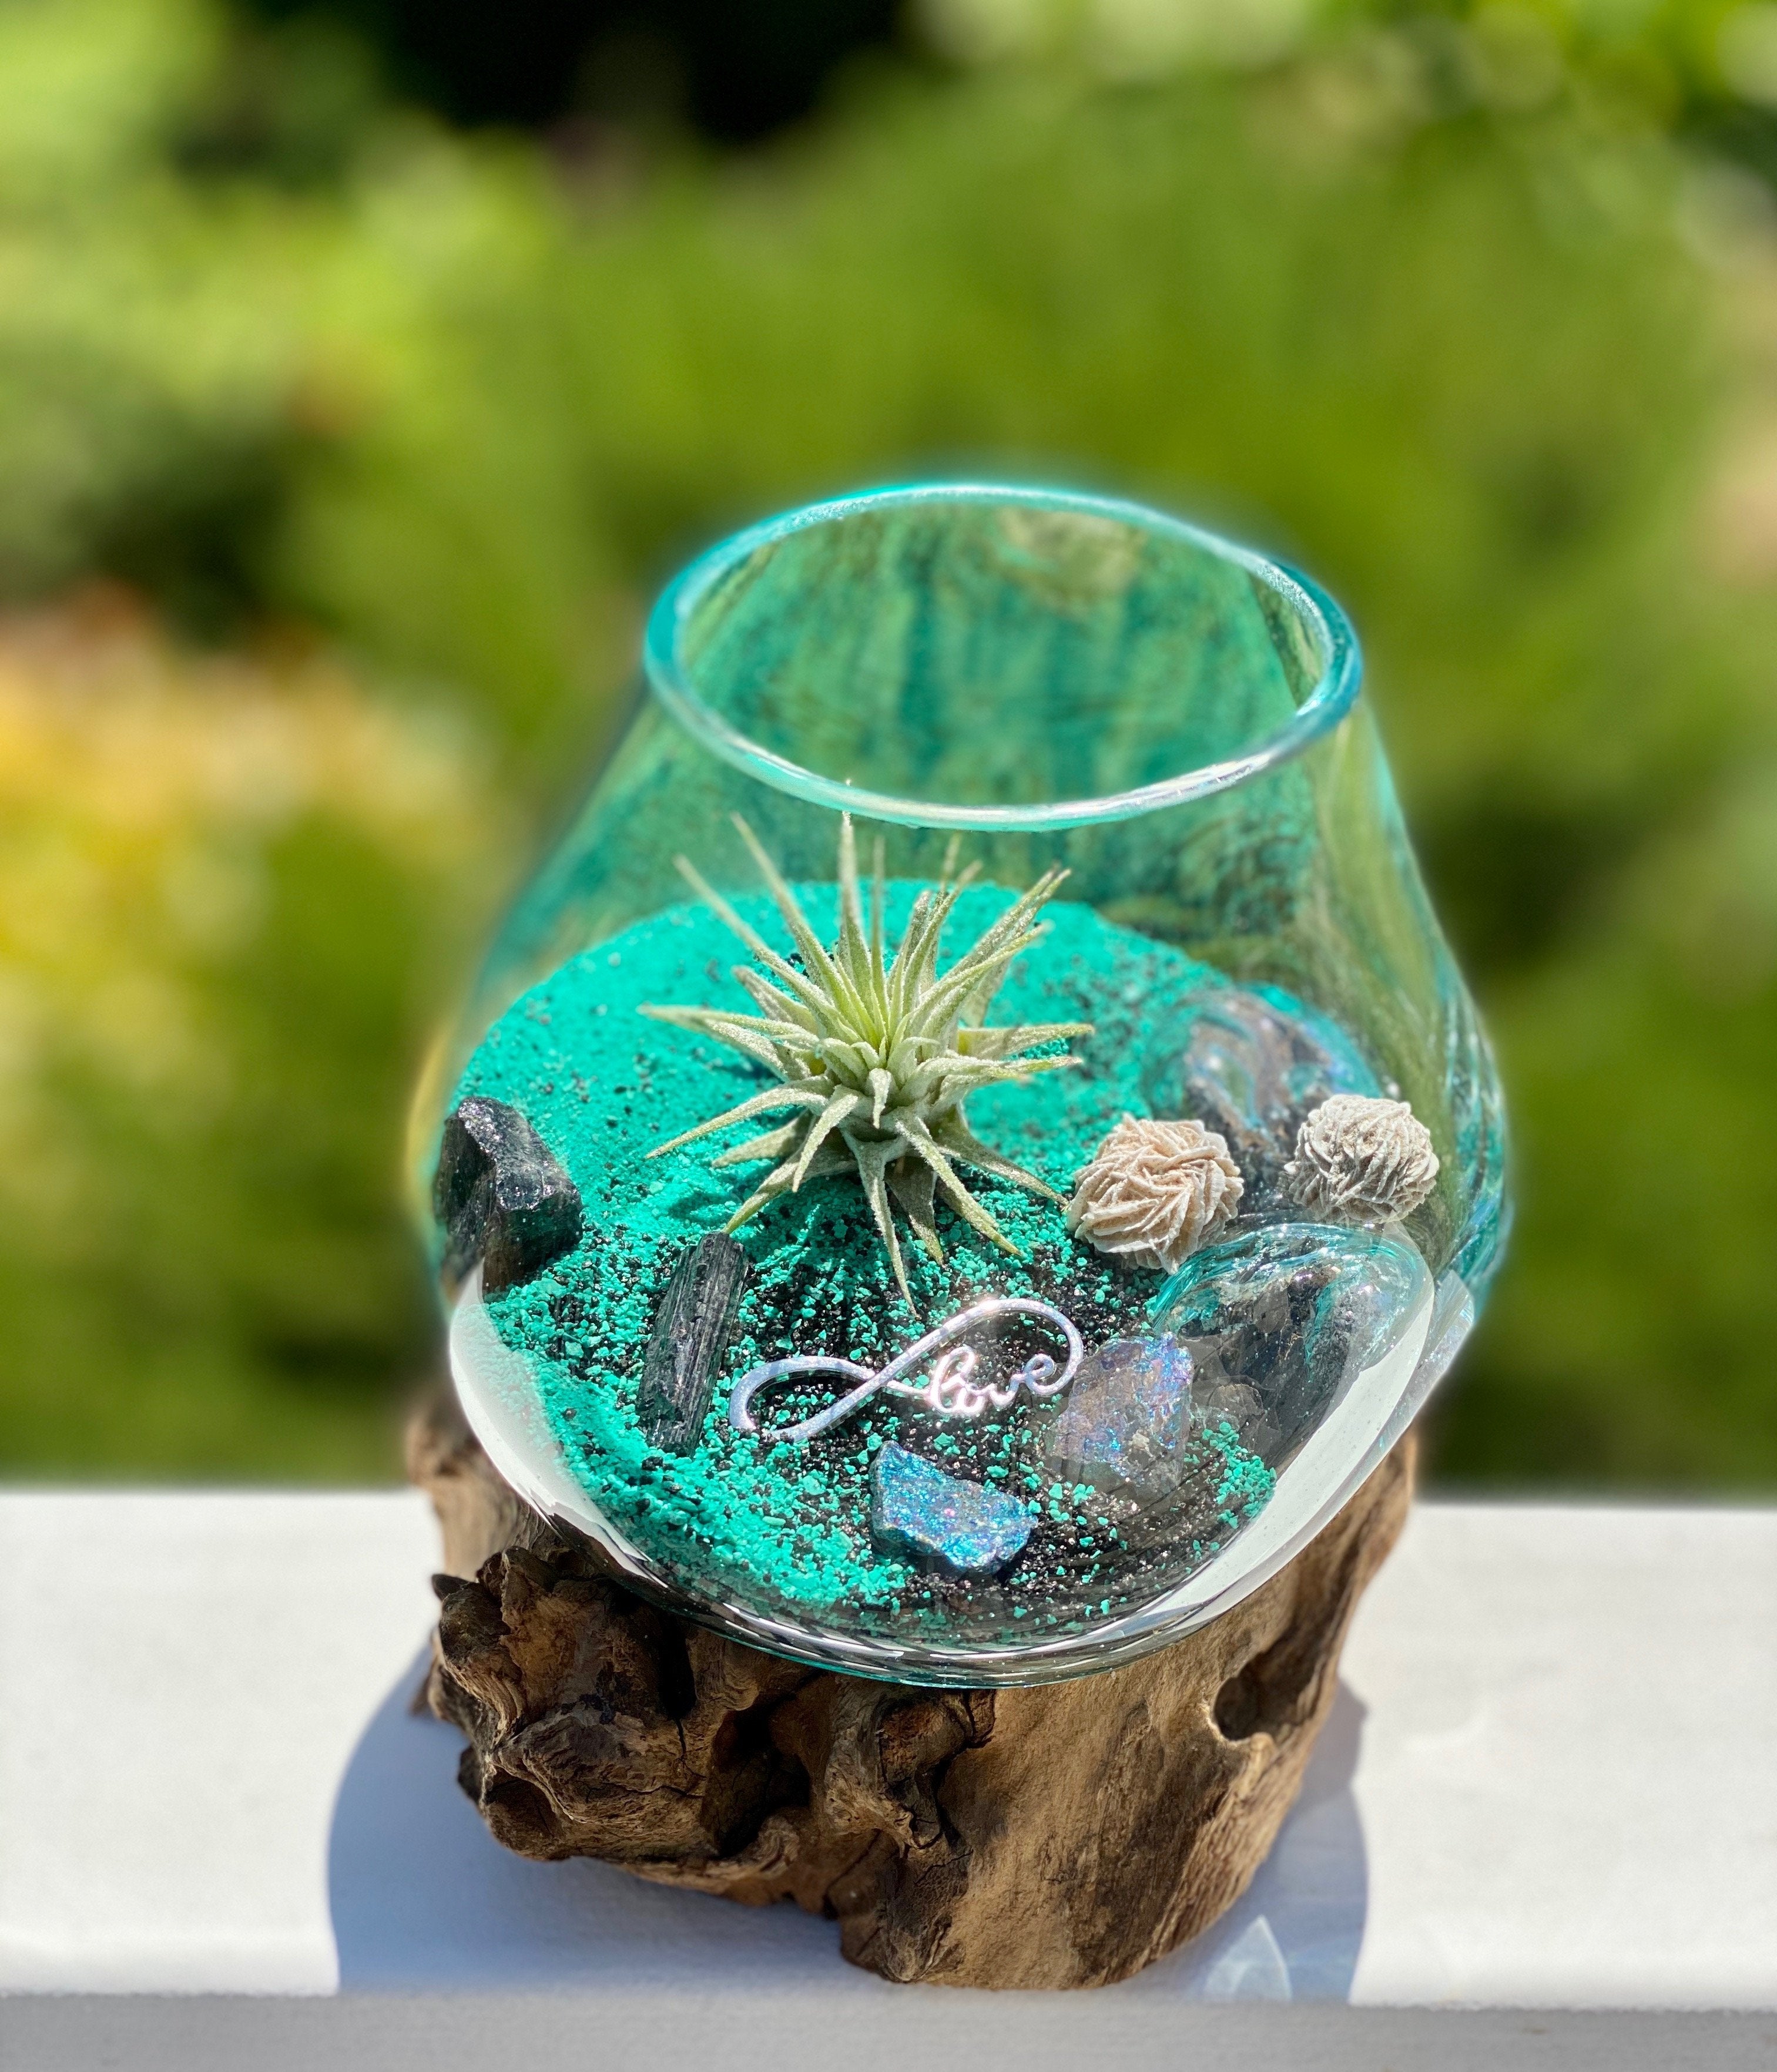 JIVA BOWLS - 1 x Pcs of 15cm Jiva bowls - Glass vase / Terrarium/ Candle stand / Crystal holder / Flower vase / Sand art / Bonsai planter / Money planter / Console table décor. - Sculptree